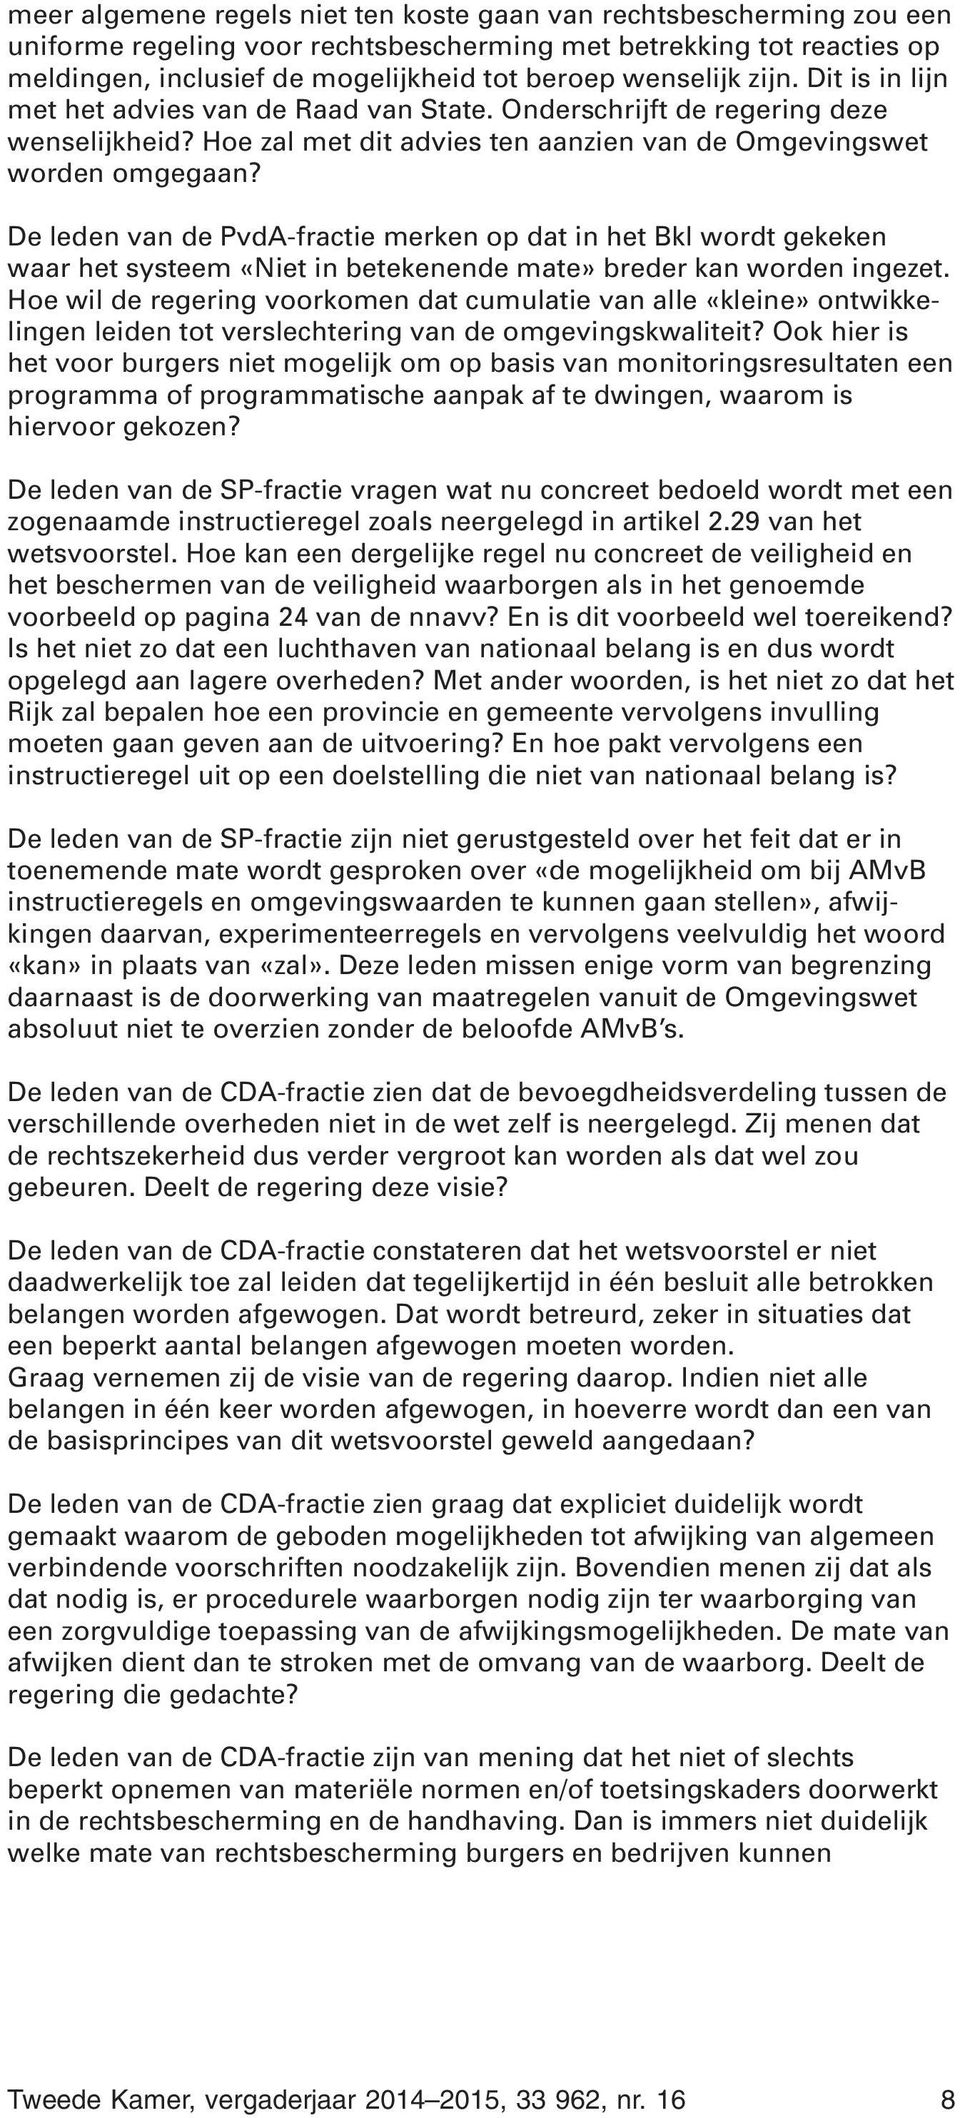 De leden van de PvdA-fractie merken op dat in het Bkl wordt gekeken waar het systeem «Niet in betekenende mate» breder kan worden ingezet.